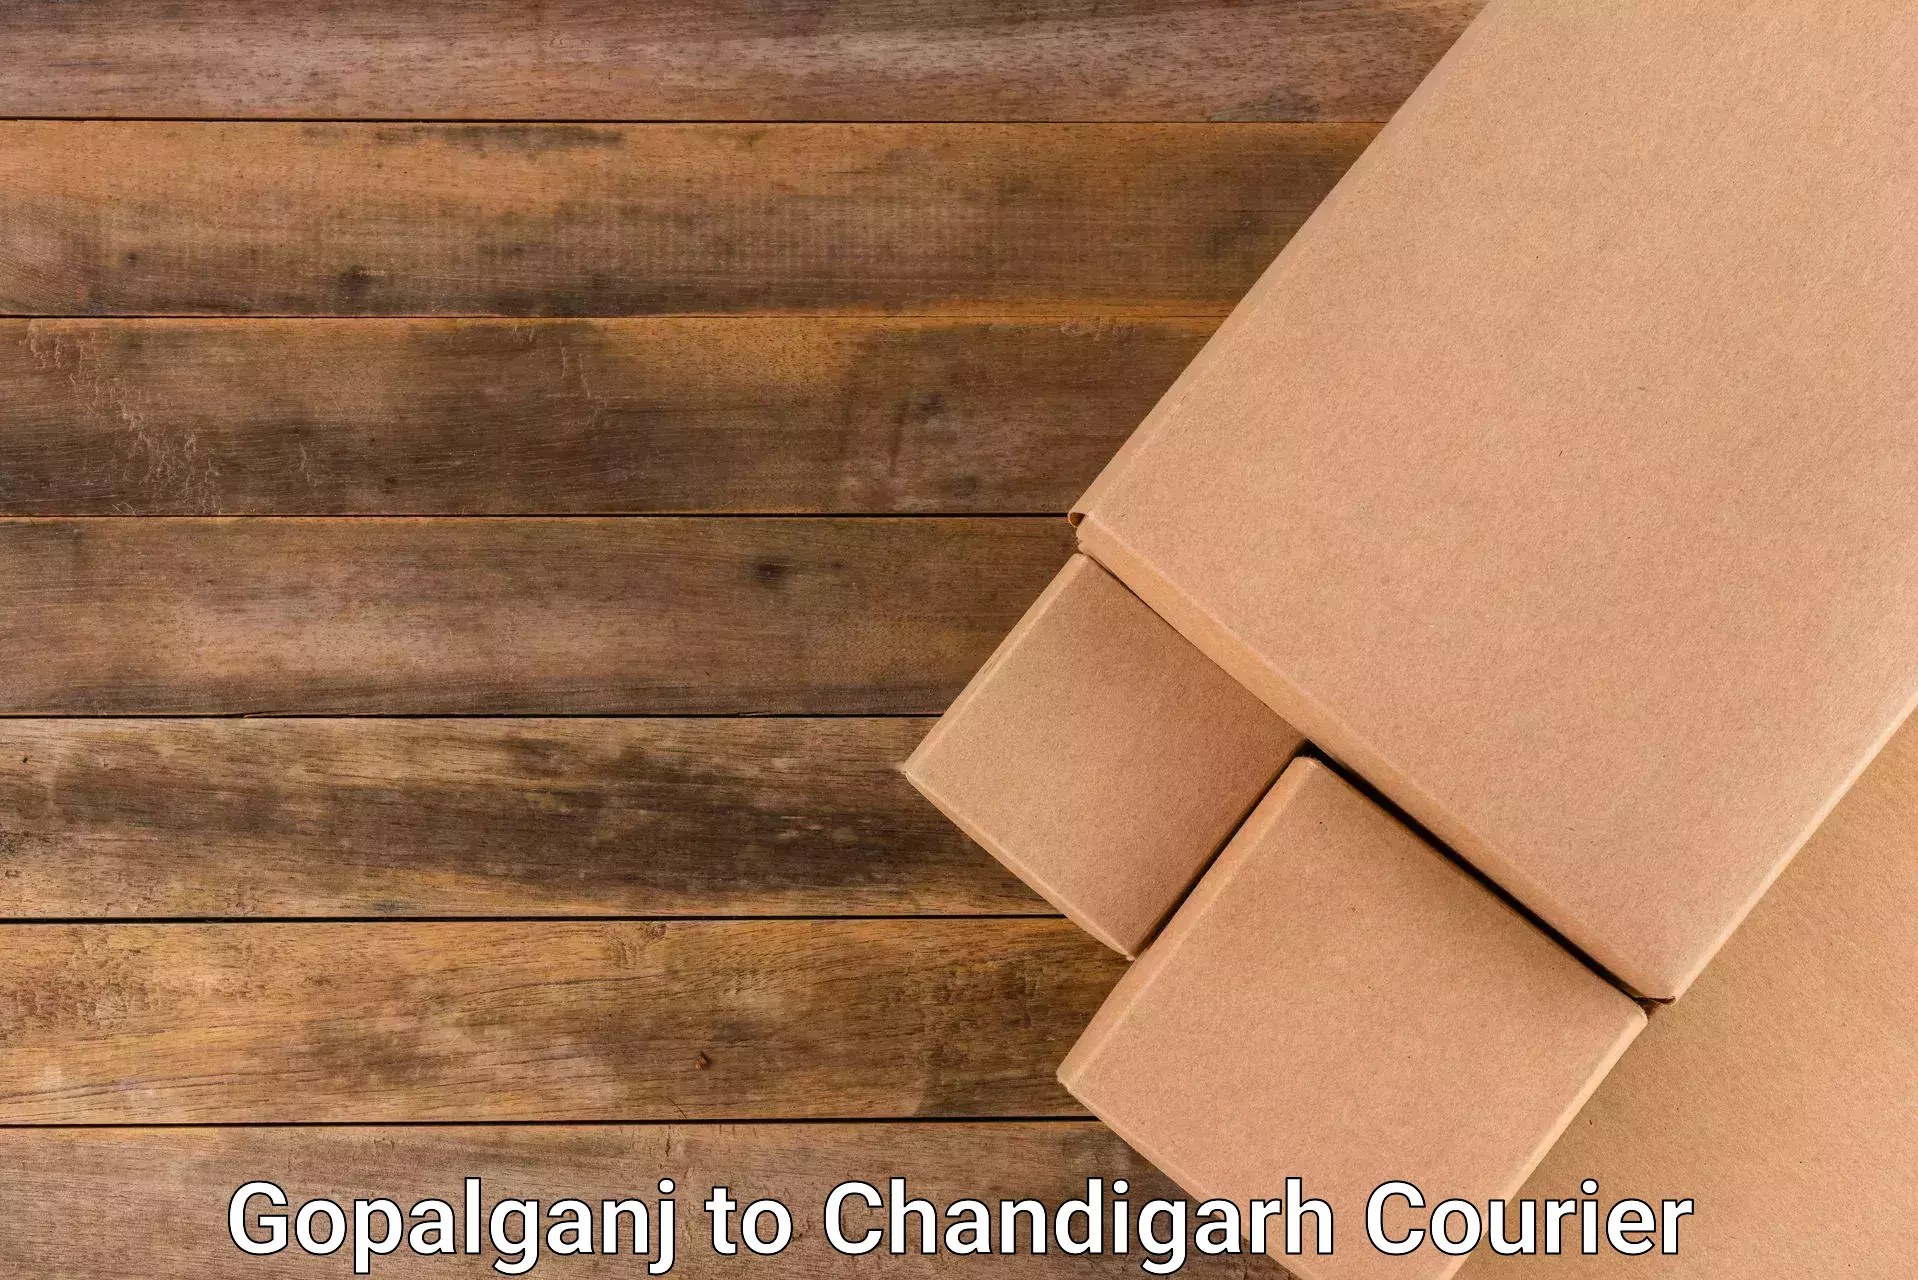 High-capacity parcel service Gopalganj to Kharar